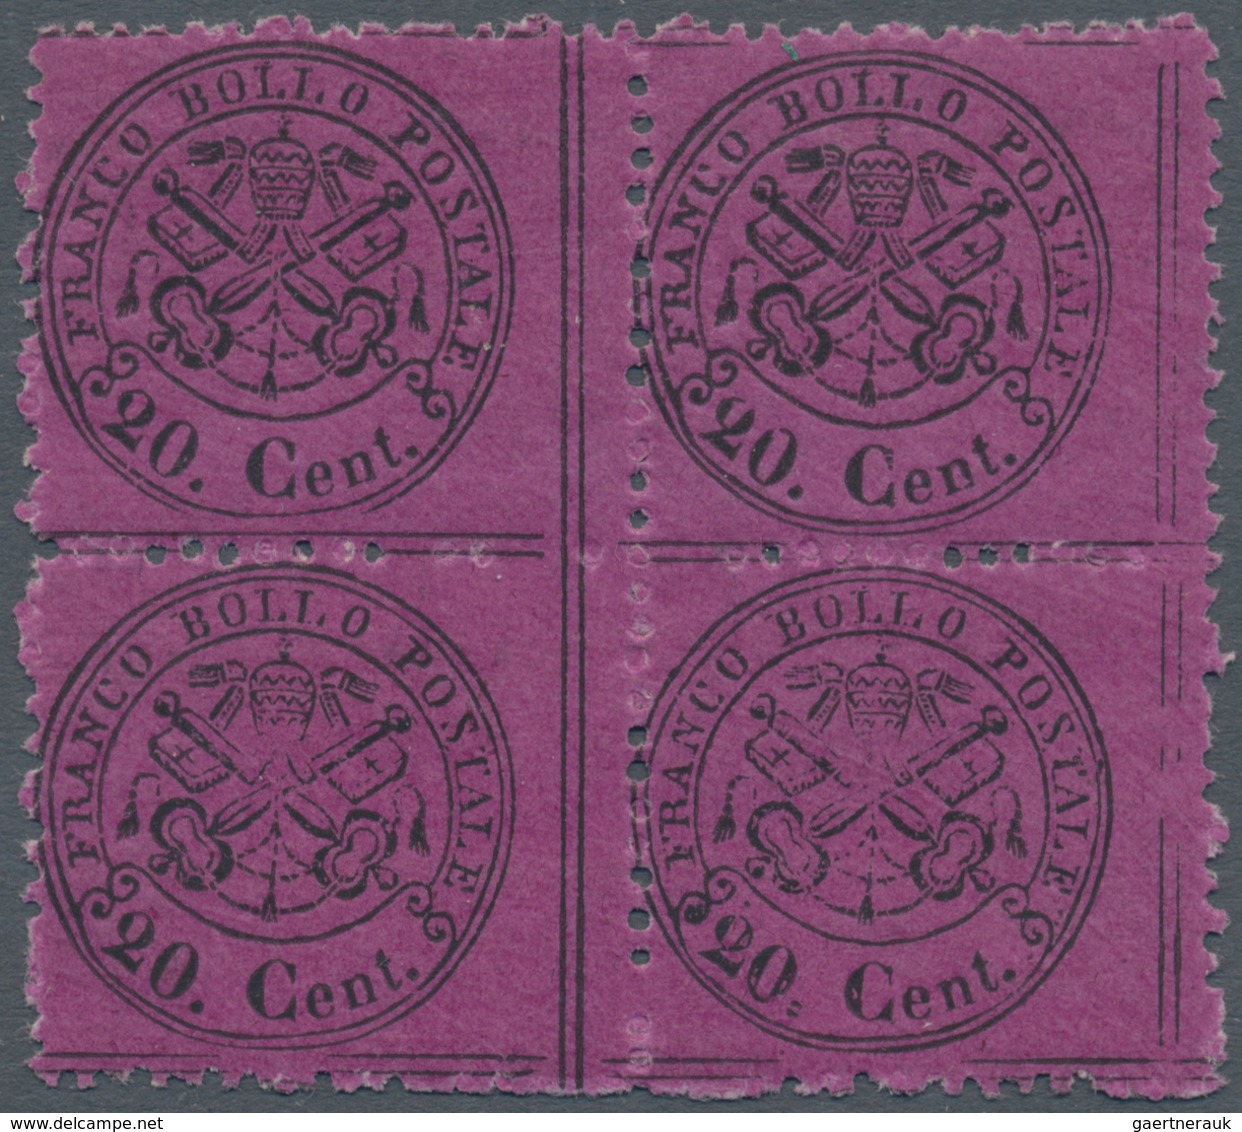 00726 Italien - Altitalienische Staaten: Kirchenstaat: 1868, 20 Cents Violet, Glossy Paper, Block Of Four, - Kirchenstaaten